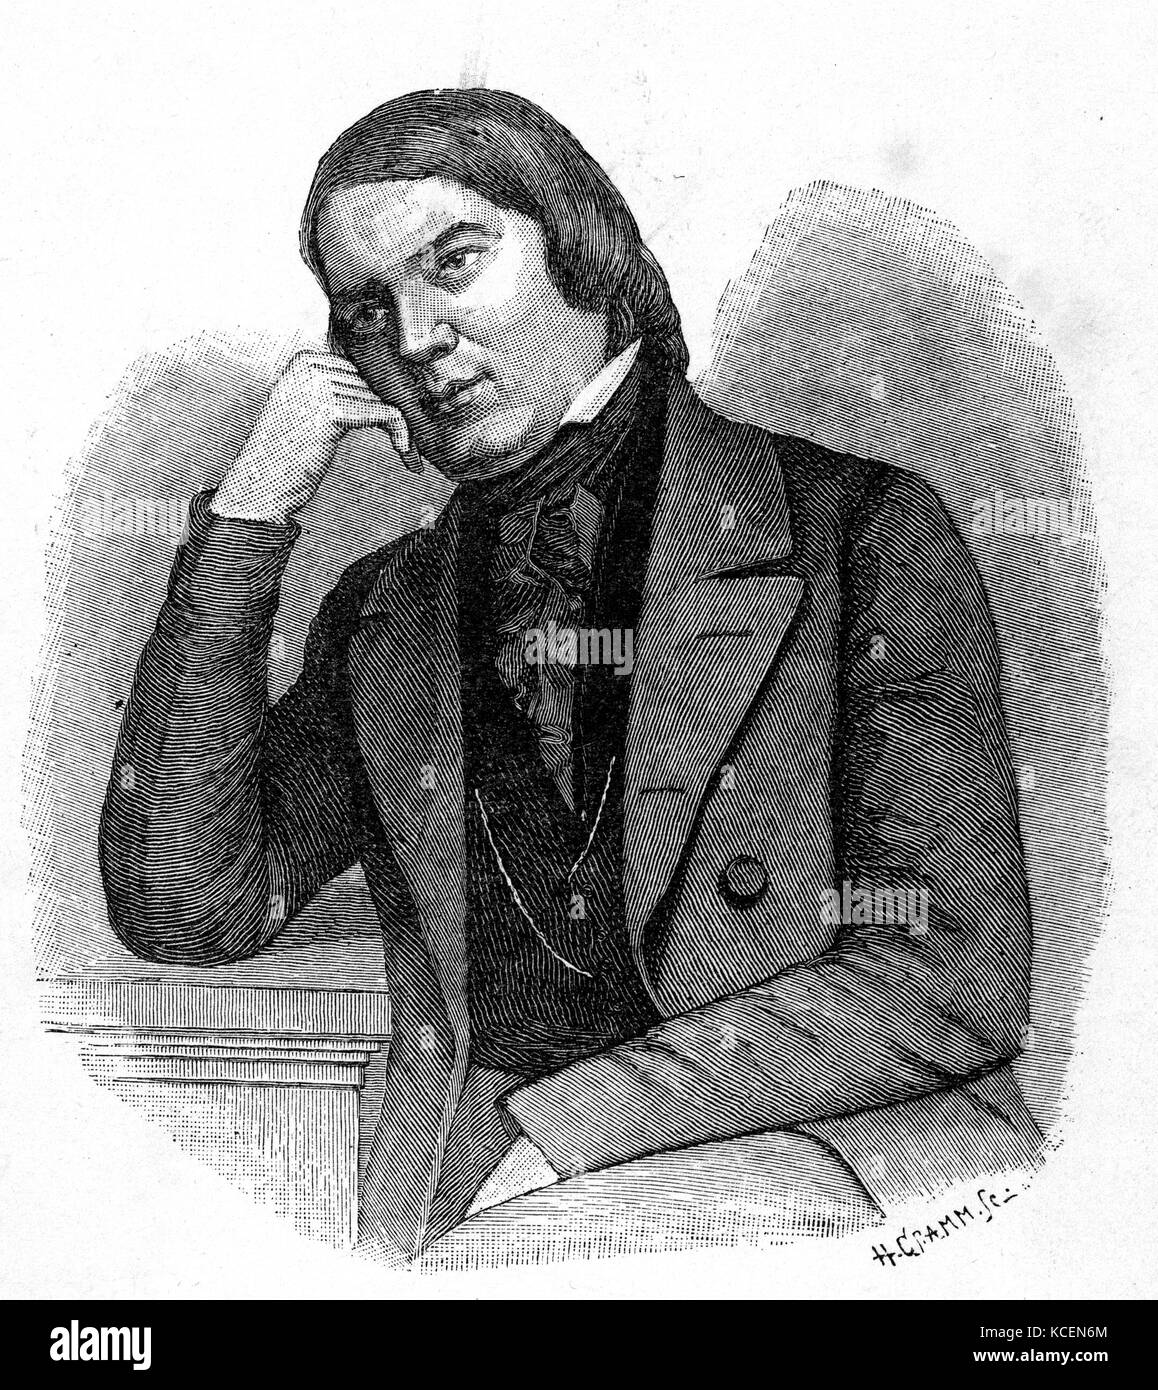 Robert Schumann (1810 - 1856) compositeur allemand et influent critique musical. Il est généralement considéré comme l'un des plus grands compositeurs de l'époque romantique. Banque D'Images